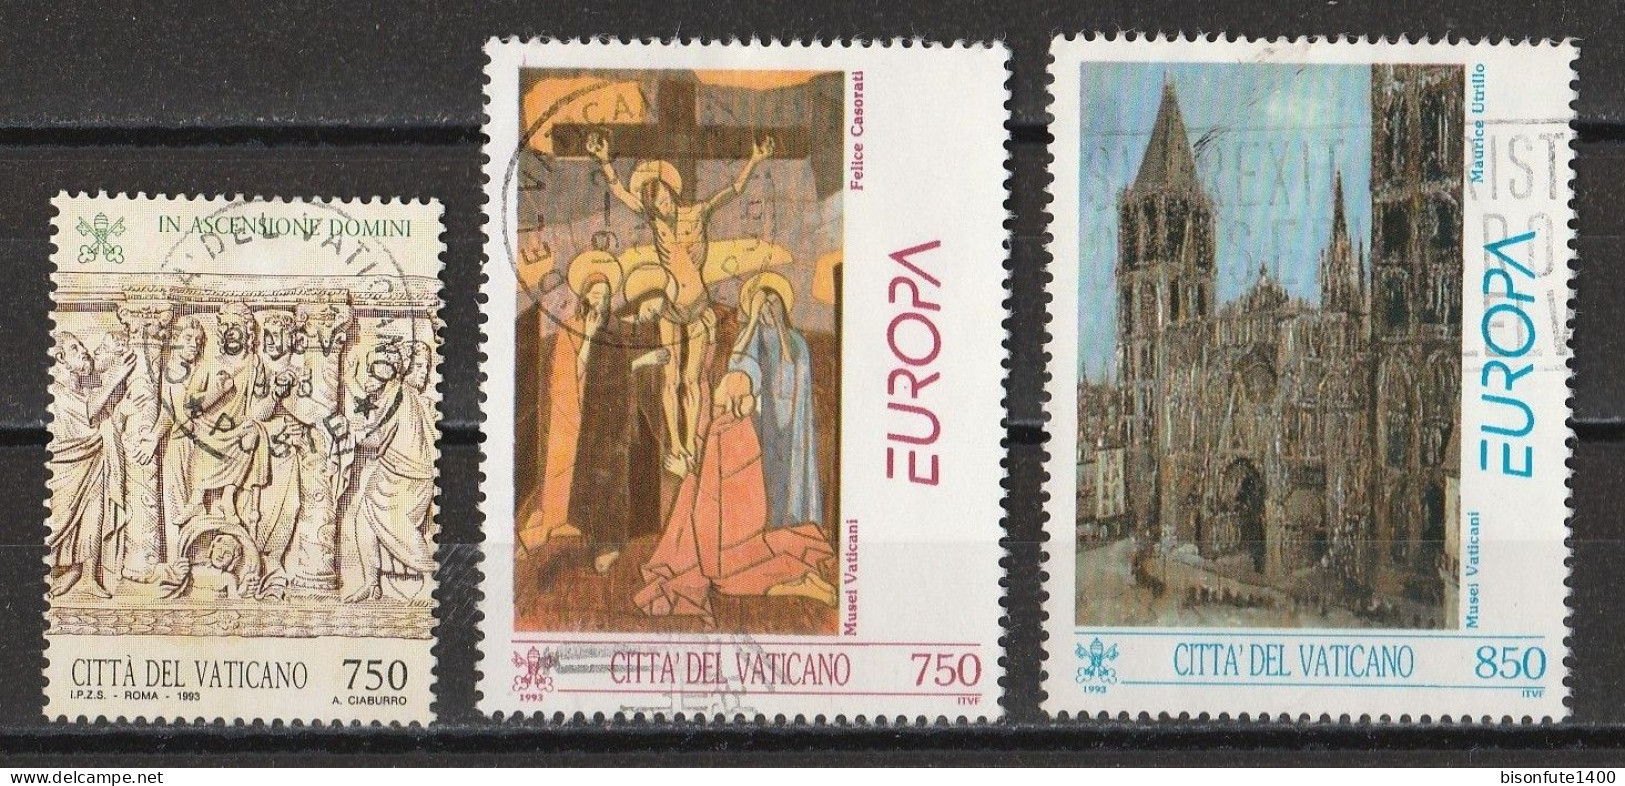 Vatican 1993 : Timbres Yvert & Tellier N° 942 - 943 - 944 - 945 - 953 - 957 - 959 Et 960 Oblitérés. - Oblitérés